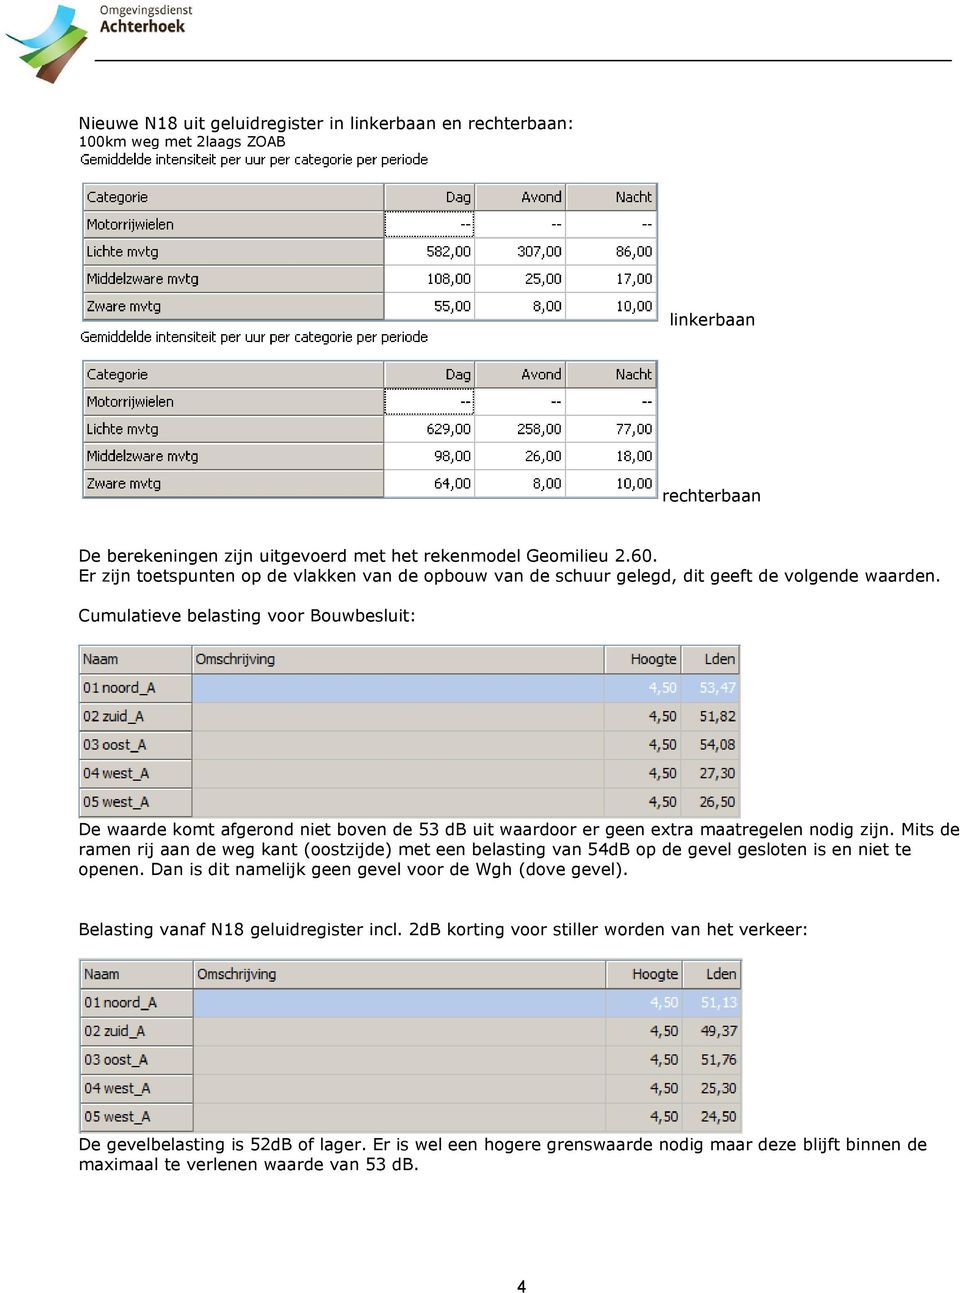 Cumulatieve belasting voor Bouwbesluit: De waarde komt afgerond niet boven de 53 db uit waardoor er geen extra maatregelen nodig zijn.